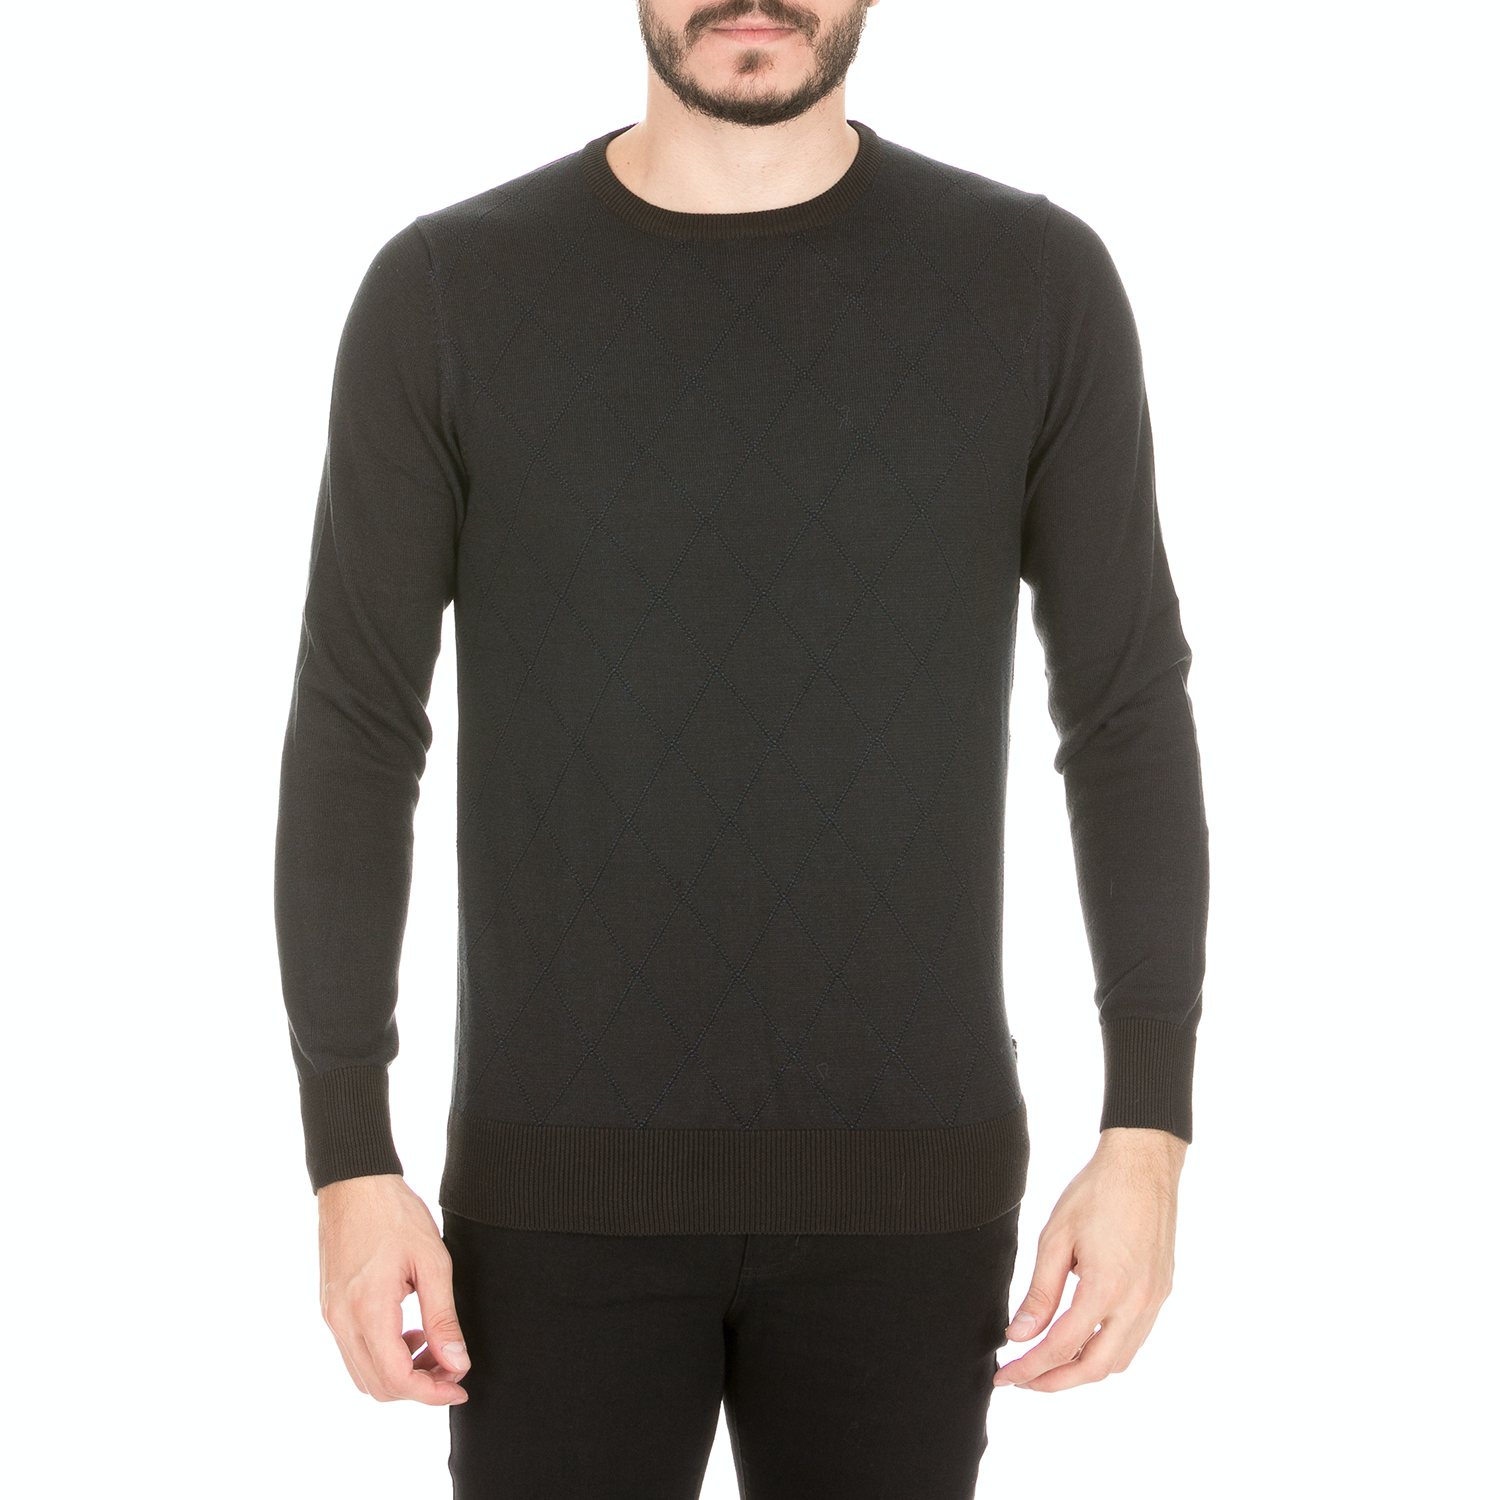 Ανδρικά/Ρούχα/Πλεκτά-Ζακέτες/Πουλόβερ GREENWOOD - Ανδρική πλεκτή μπλούζα GREENWOOD μαύρη